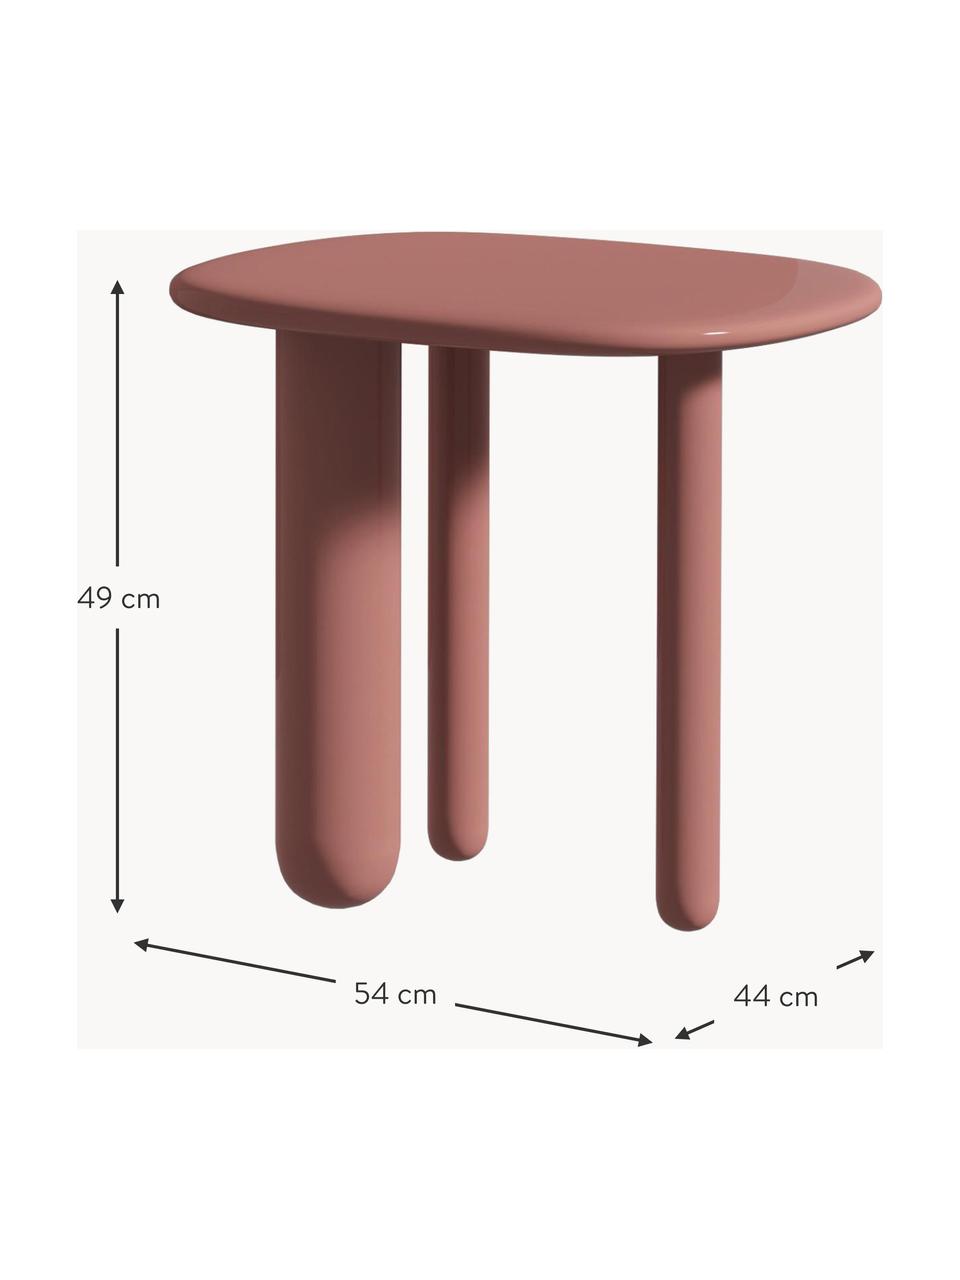 Oválný odkládací stolek Tottori, Lakovaná dřevovláknitá deska střední hustoty (MDF), Dřevo, lakované starorůžovou barvou, Š 54 cm, V 49 cm